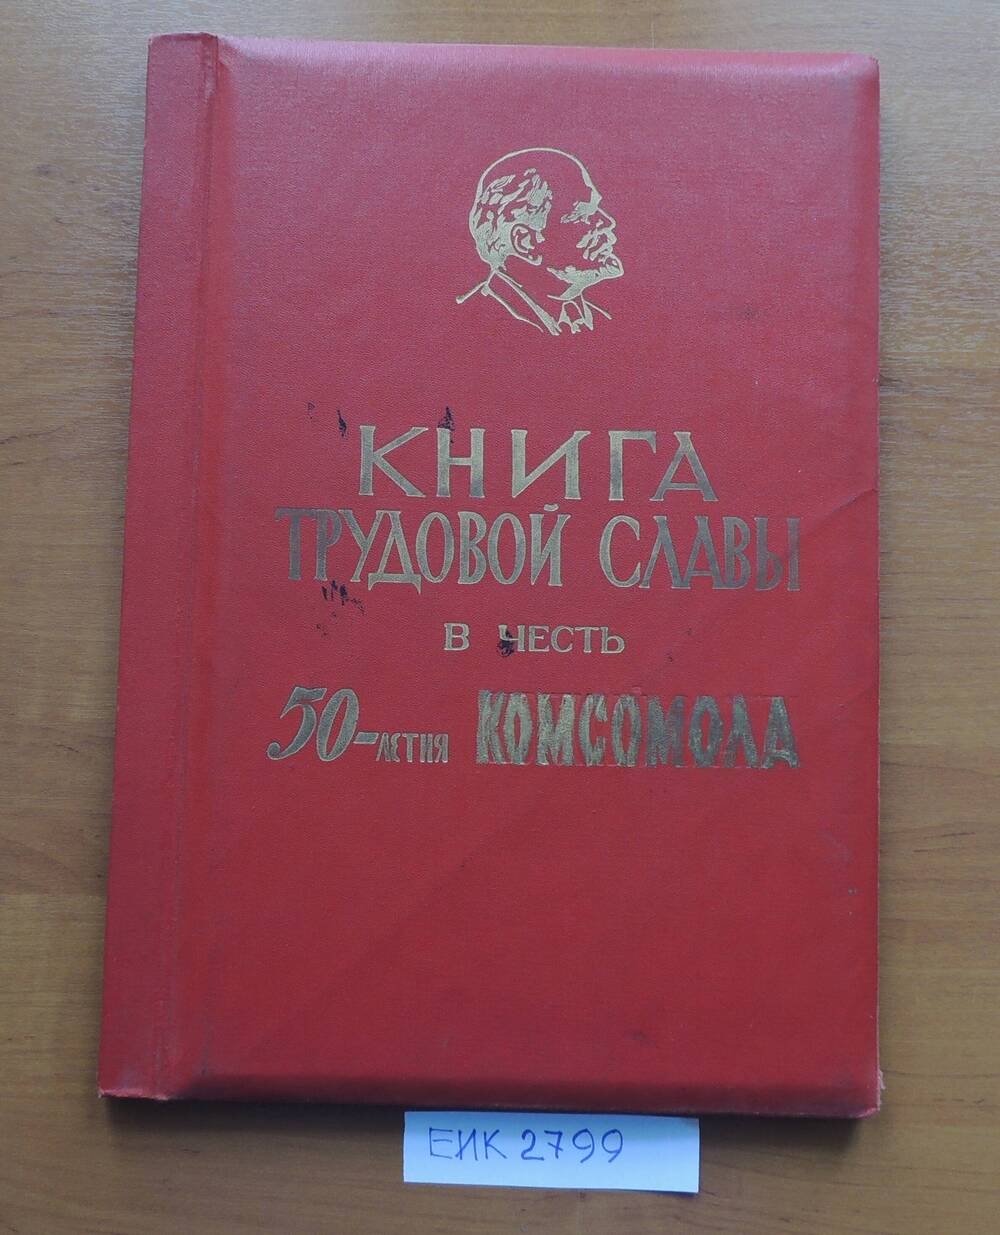 Книга Трудовой Славы в честь 50 летия комсомола